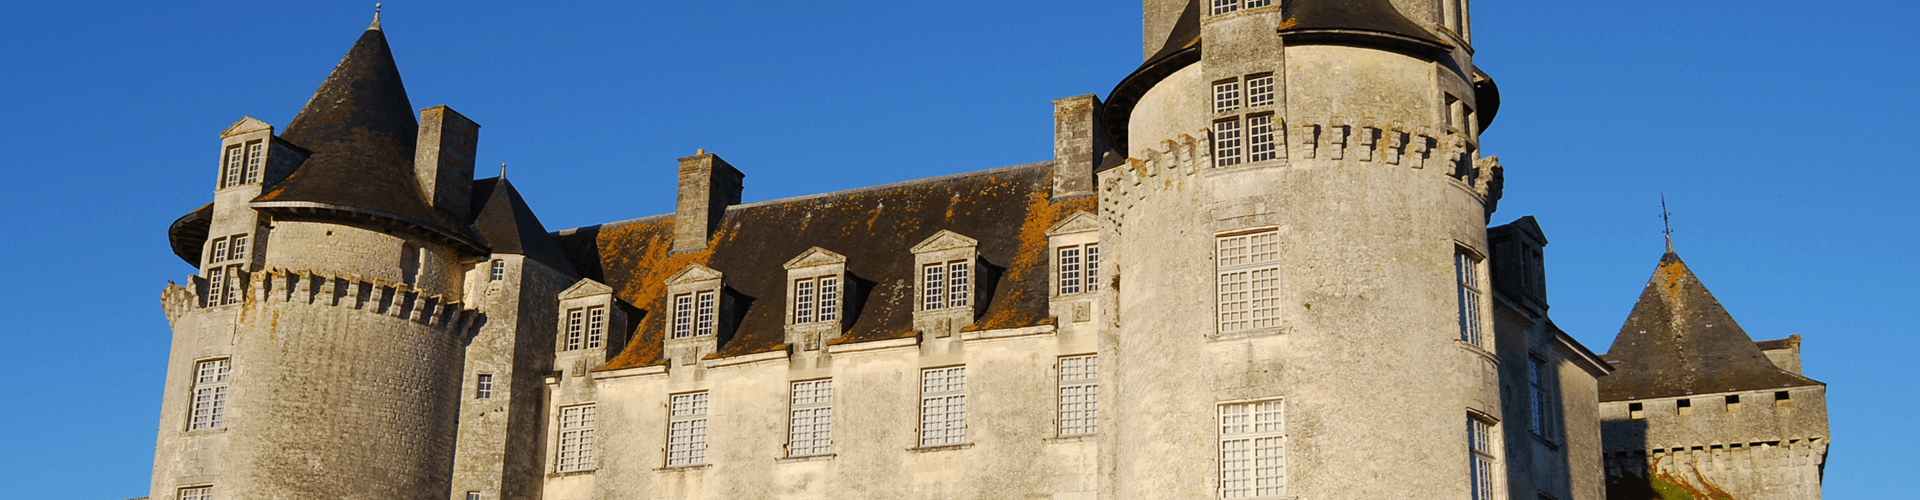 Bezienswaardigheden in Poitou Charentes: Chateau de La Roche Courbon